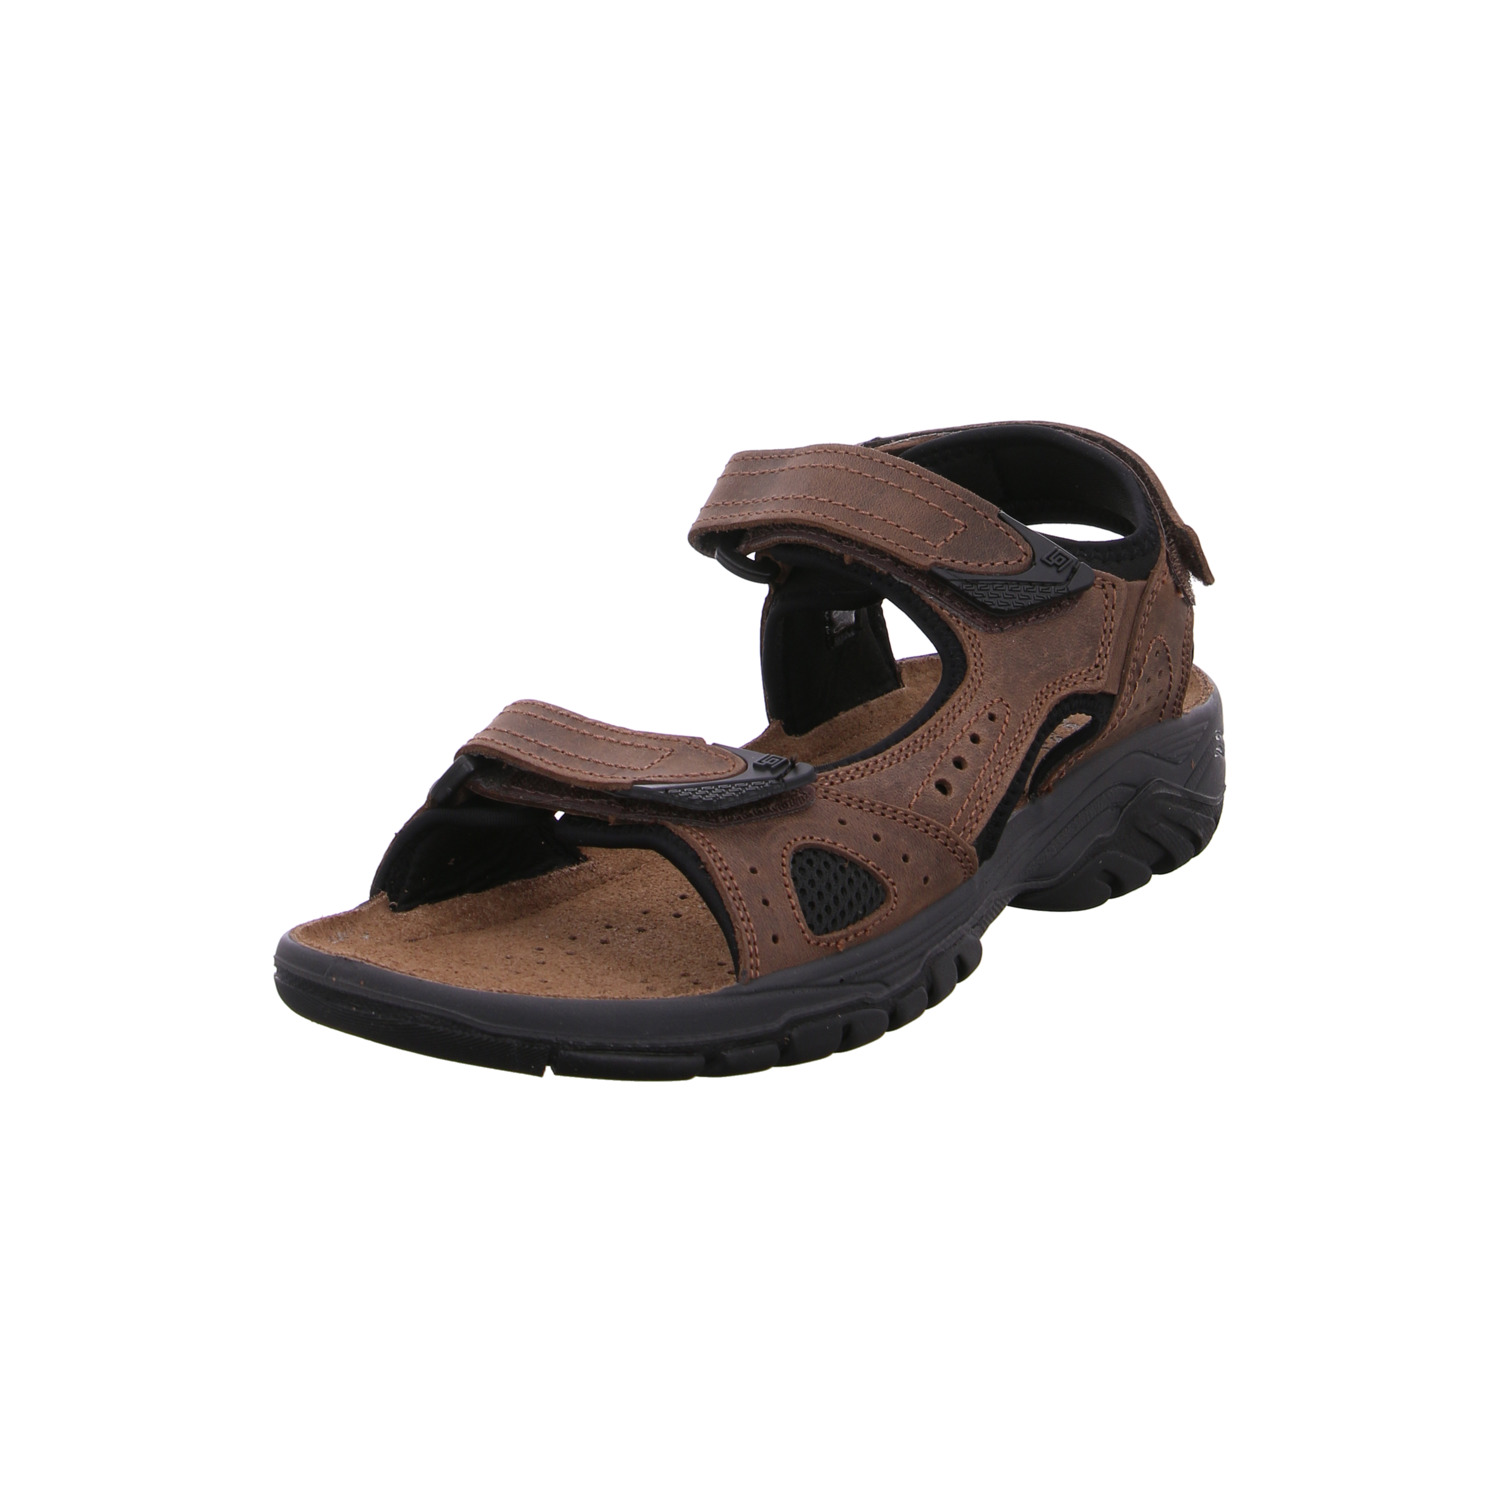 orion-sandaletten-braun-118983-40